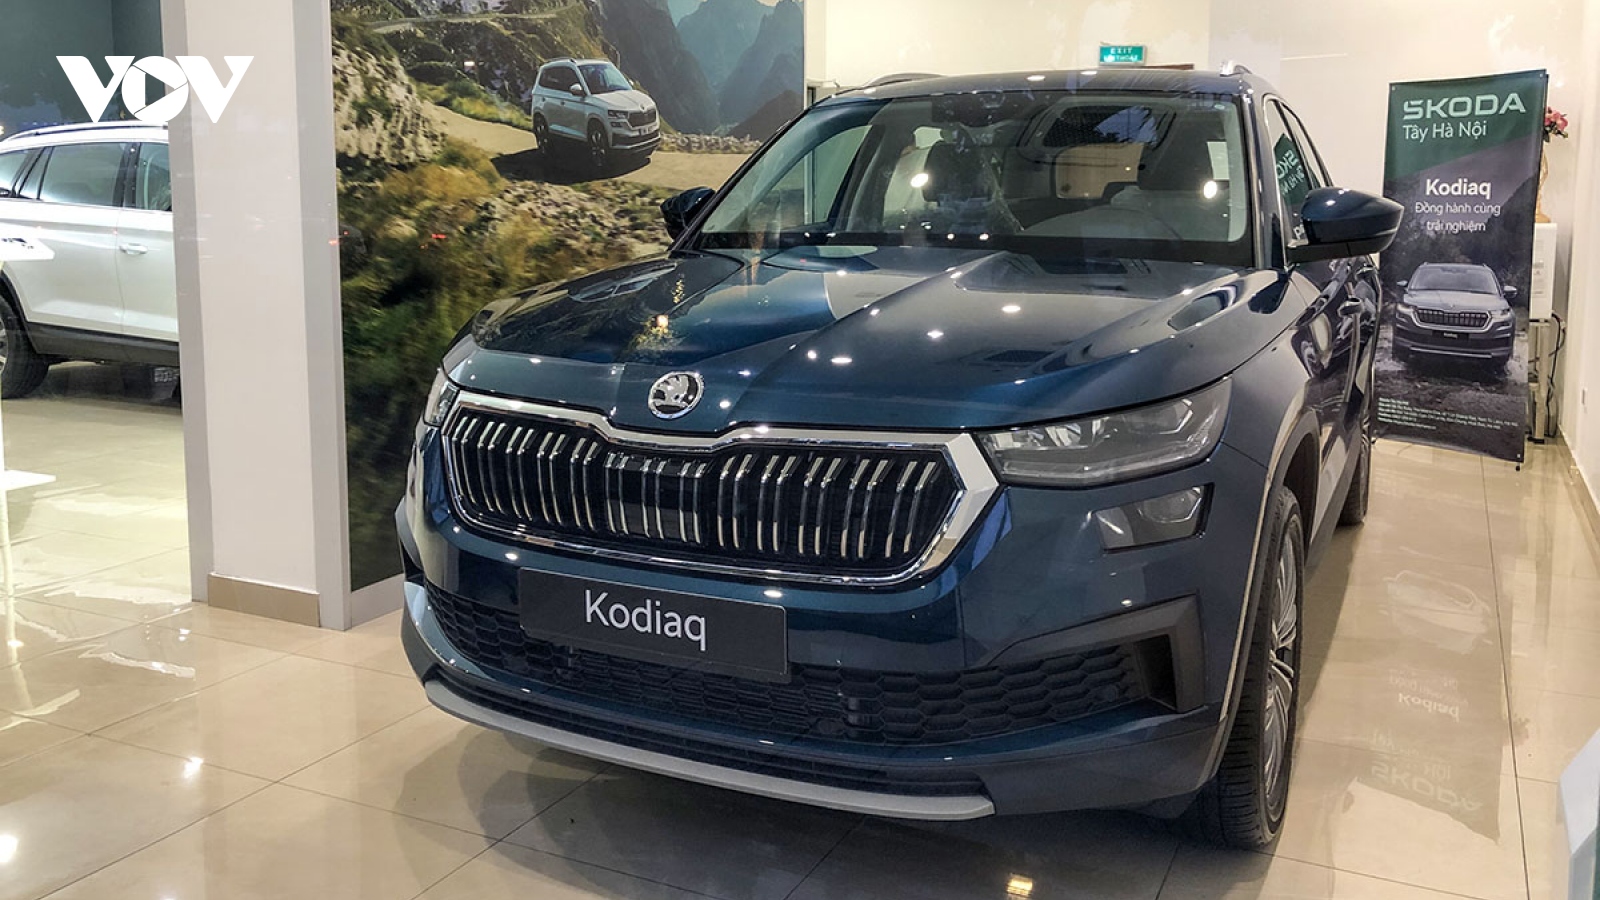 Skoda đồng loạt giảm giá bộ đôi SUV Karoq và Kodiaq cả trăm triệu đồng